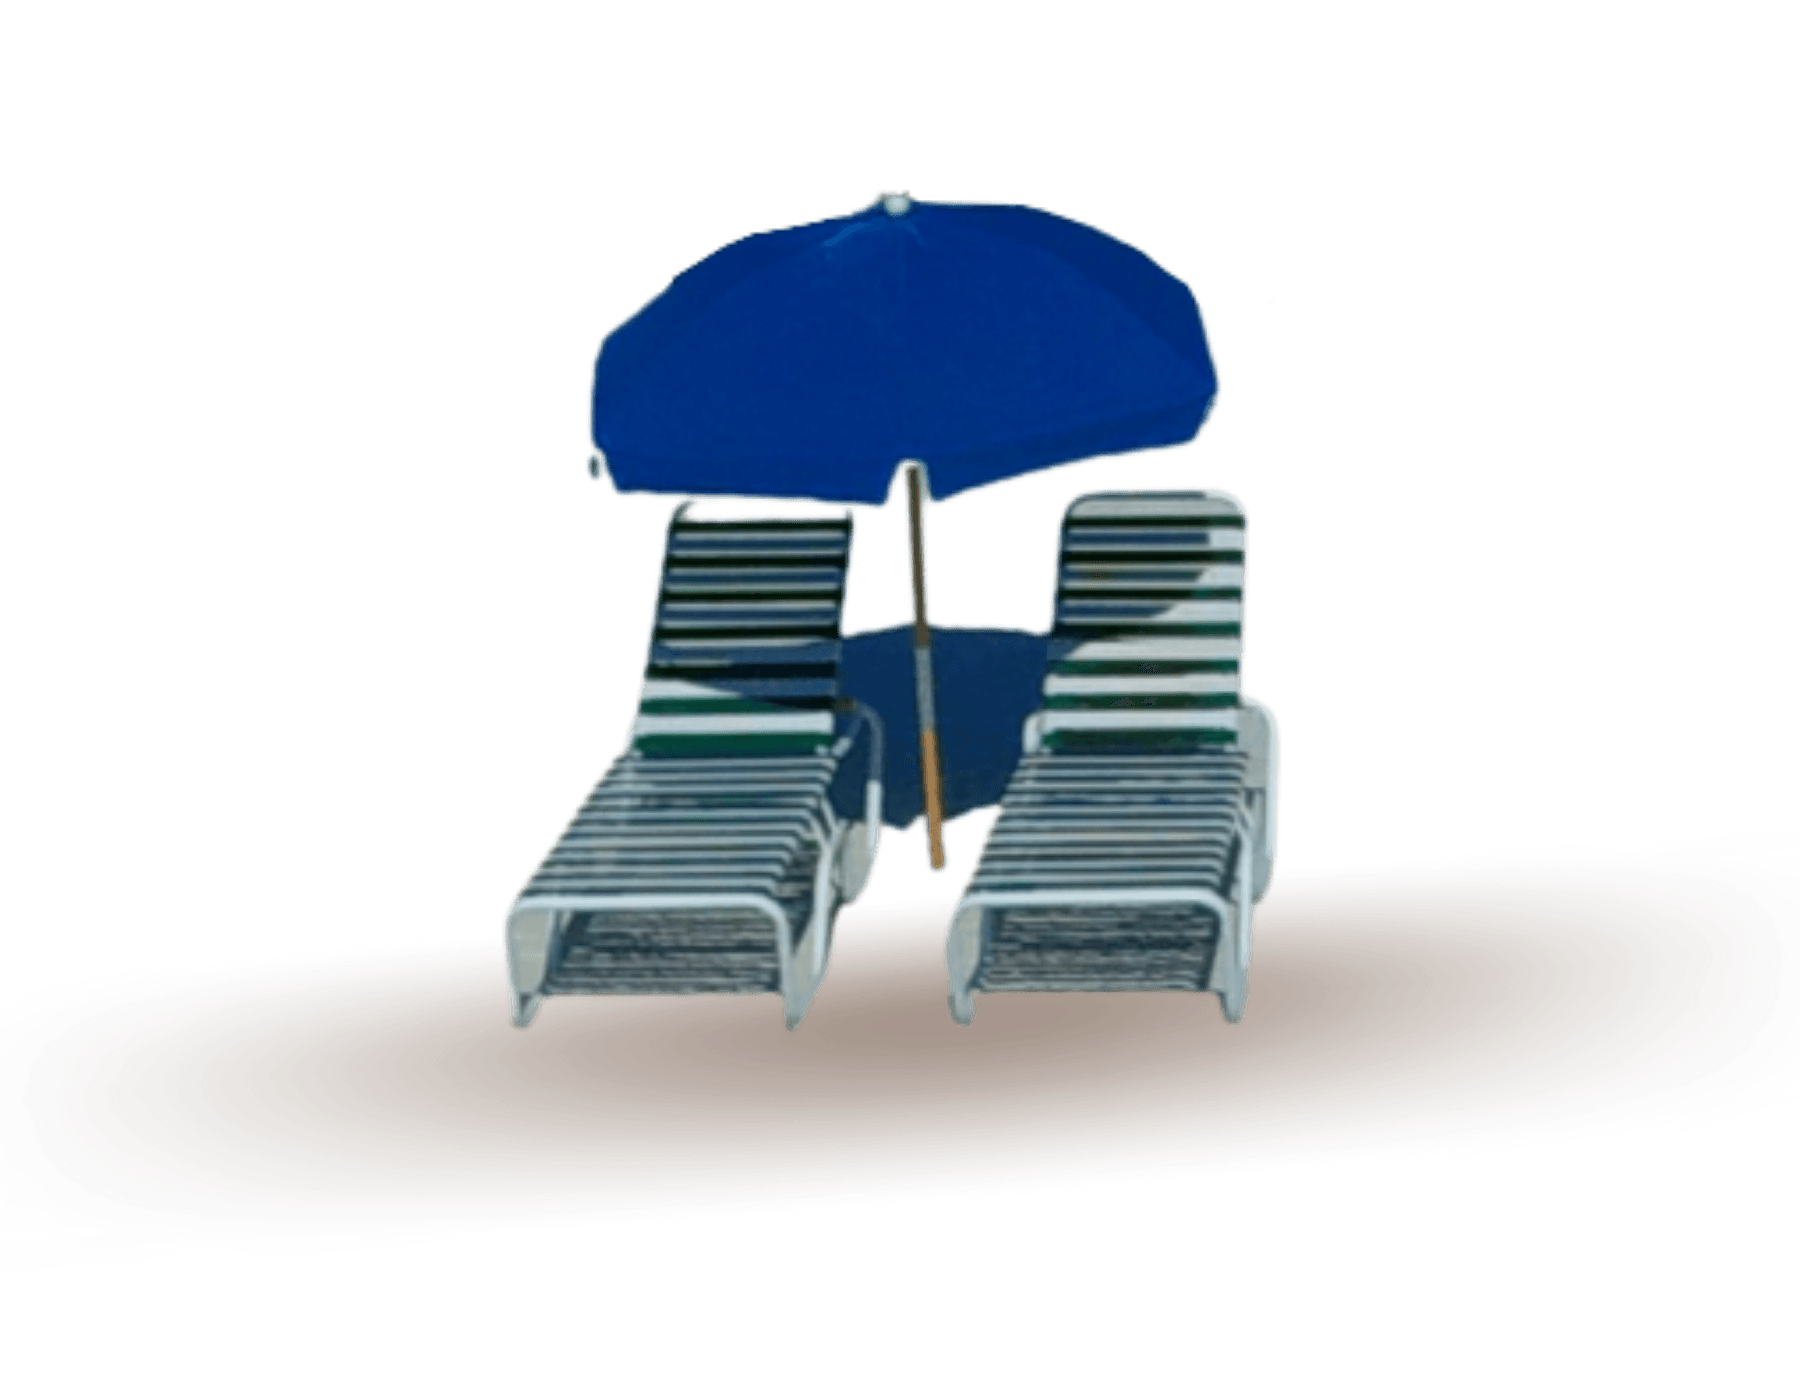 Blue beach chairs